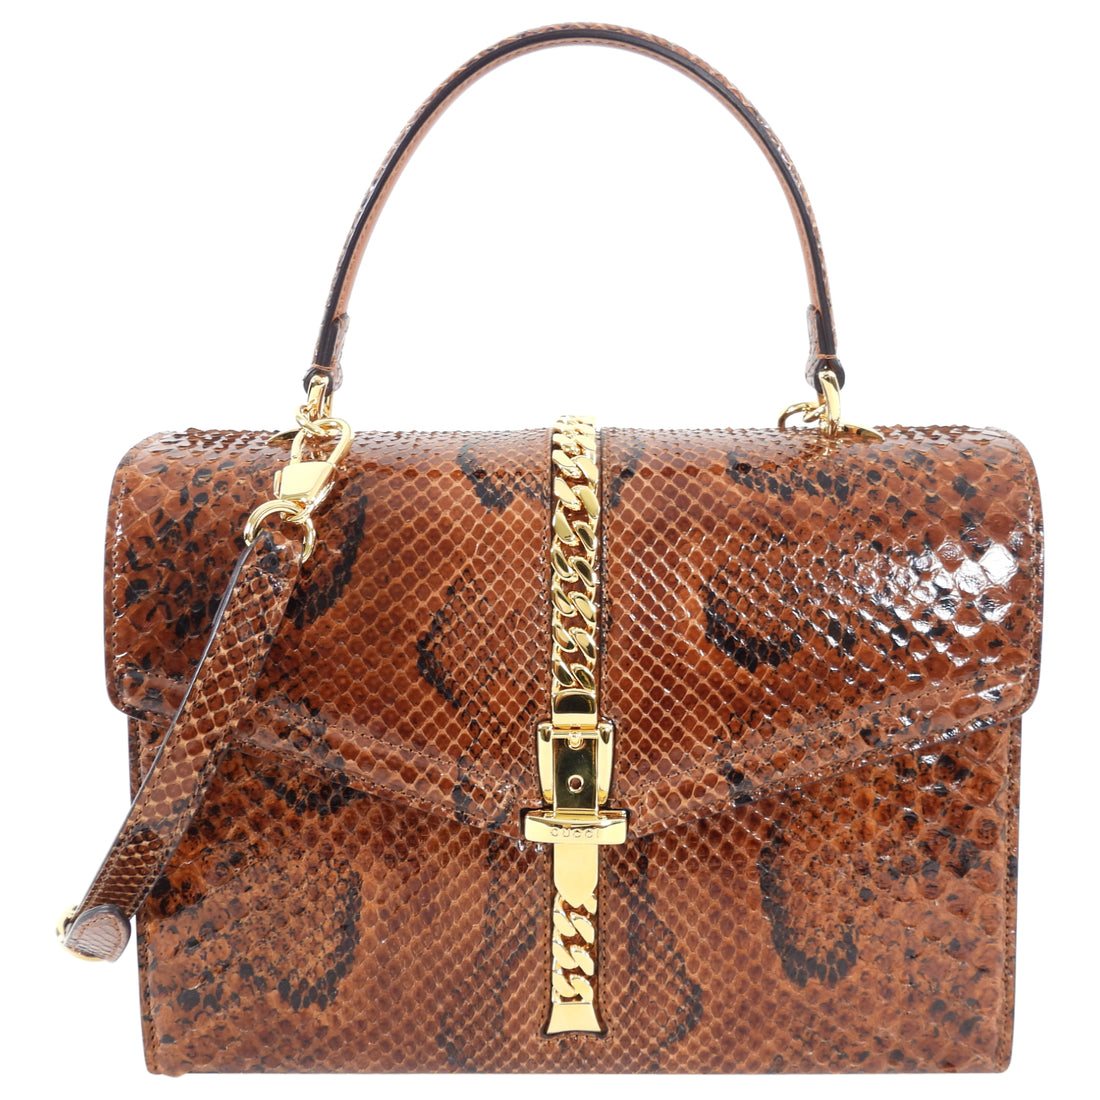 Gucci Sylvie 1969 Python Two Way Top Handle Bag